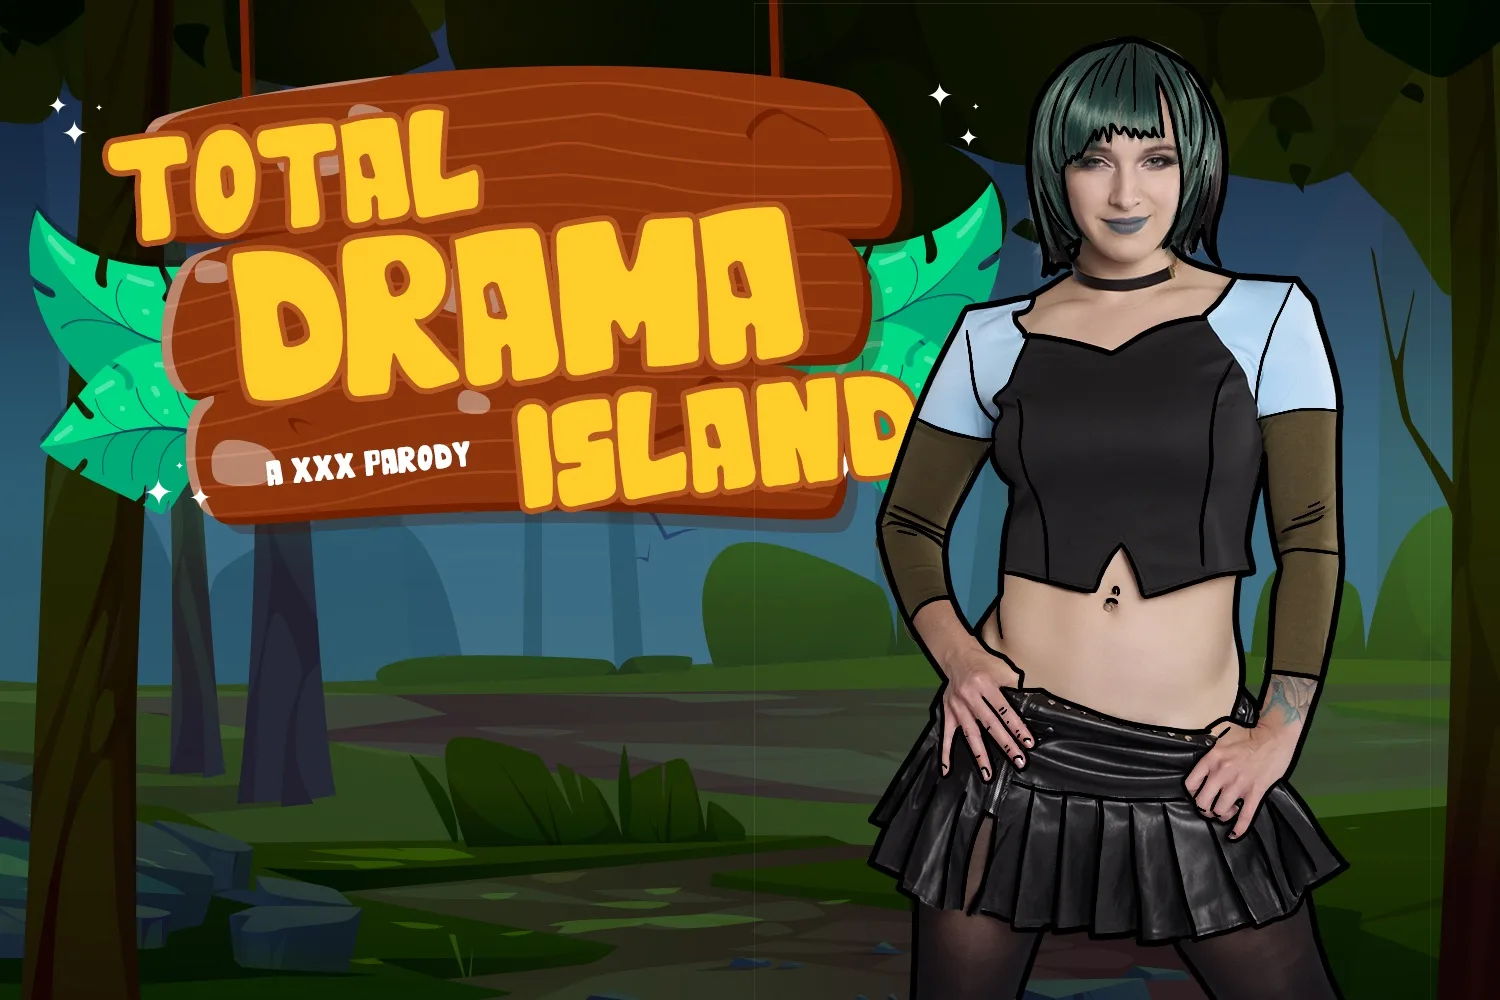 [2023-08-24] Total Drama Island A XXX Parody - VRCosplayX